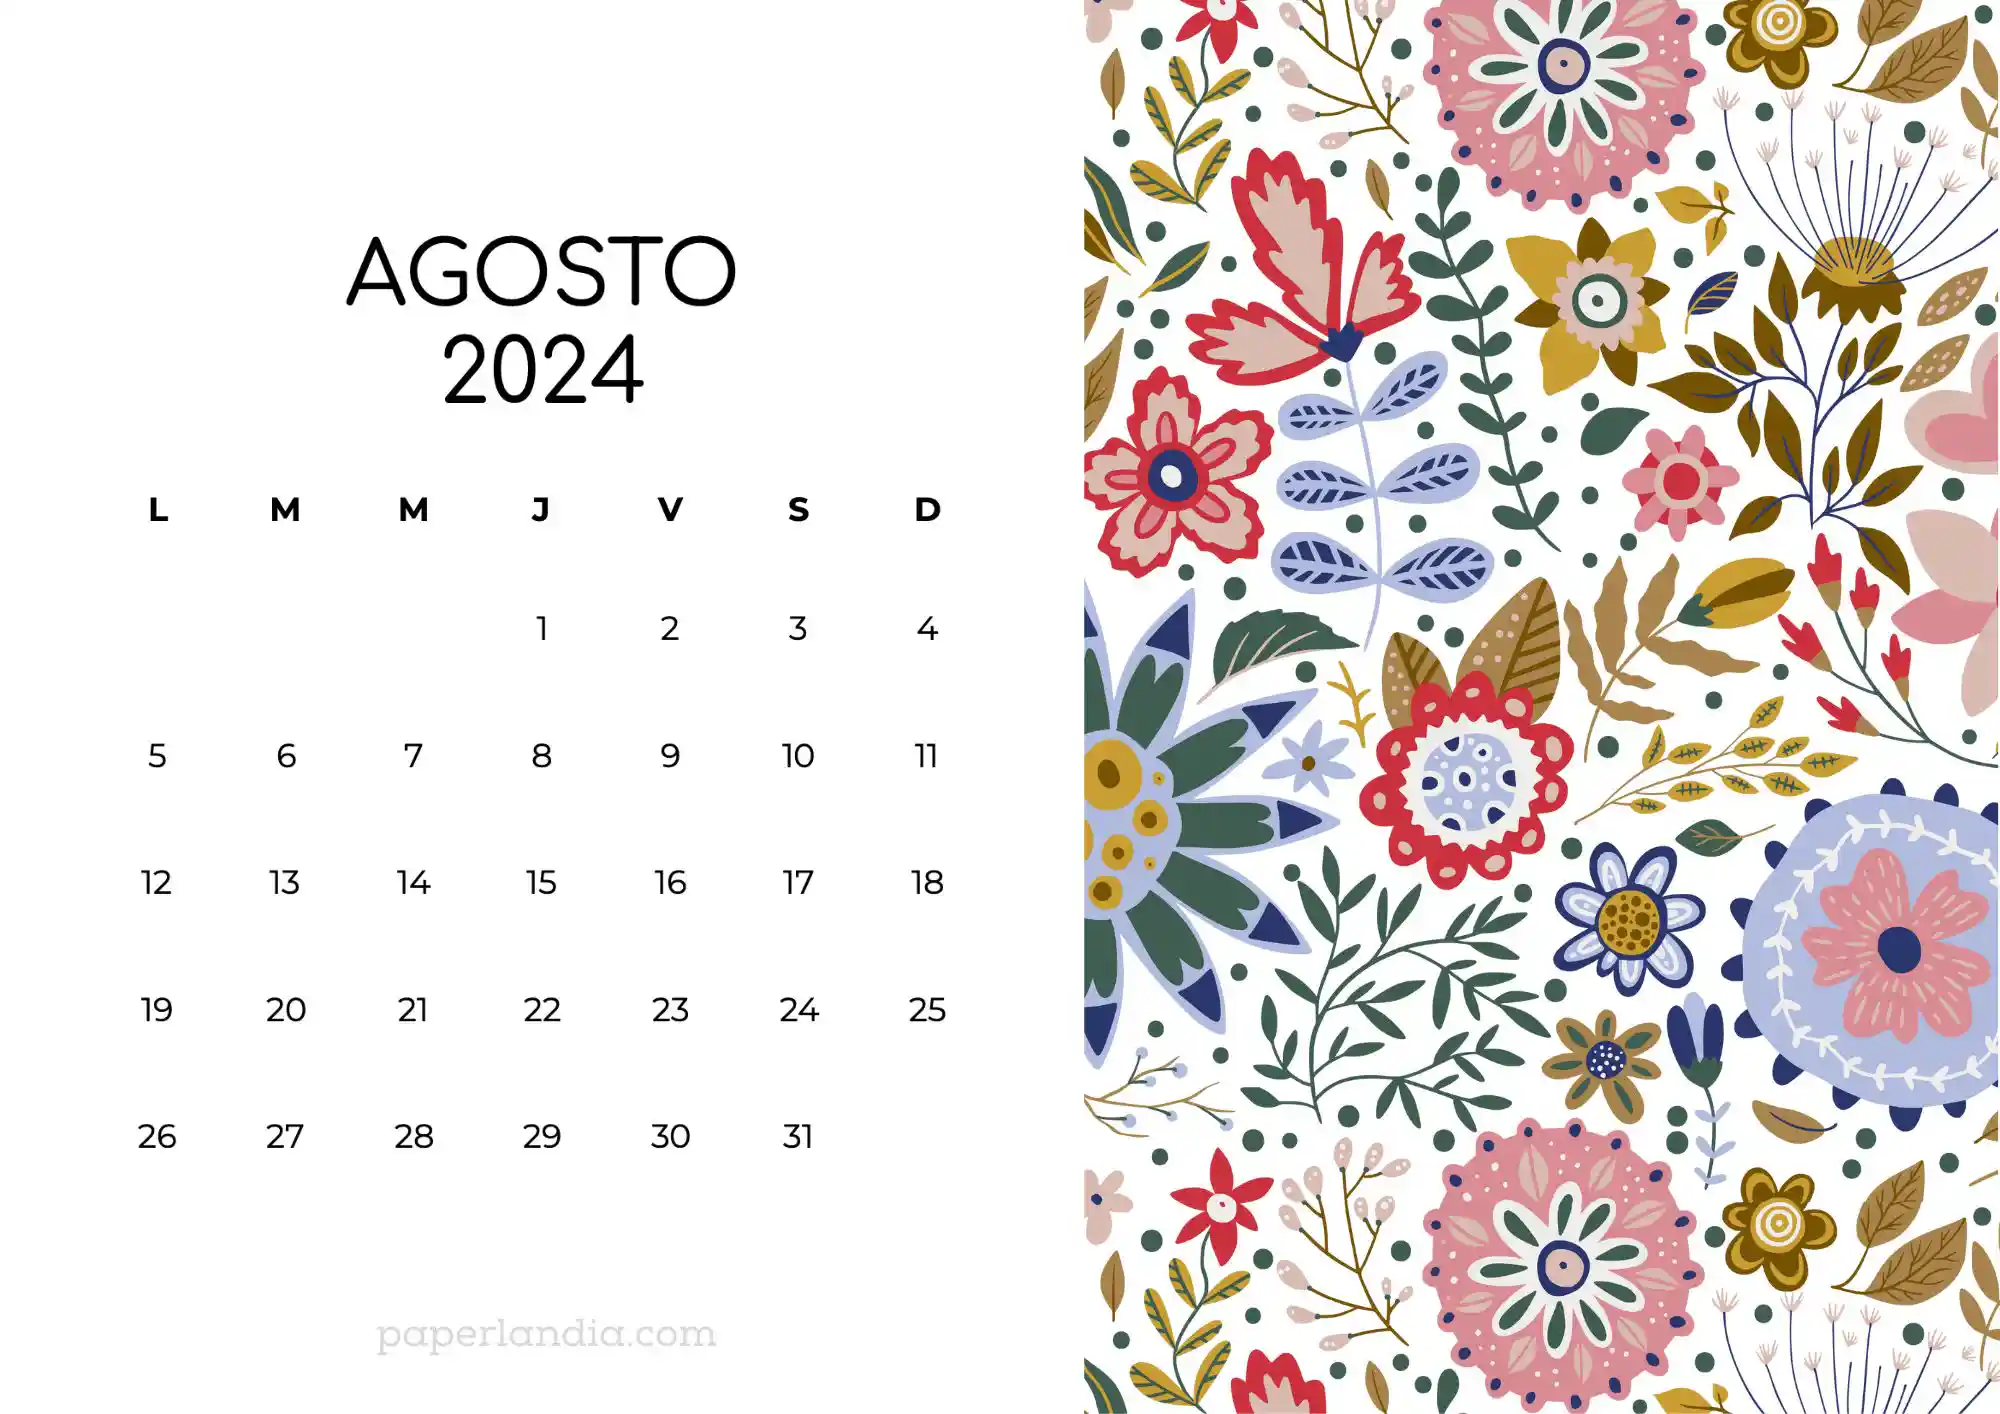 Calendario agosto 2024 horizontal con flores escandinavas fondo blanco